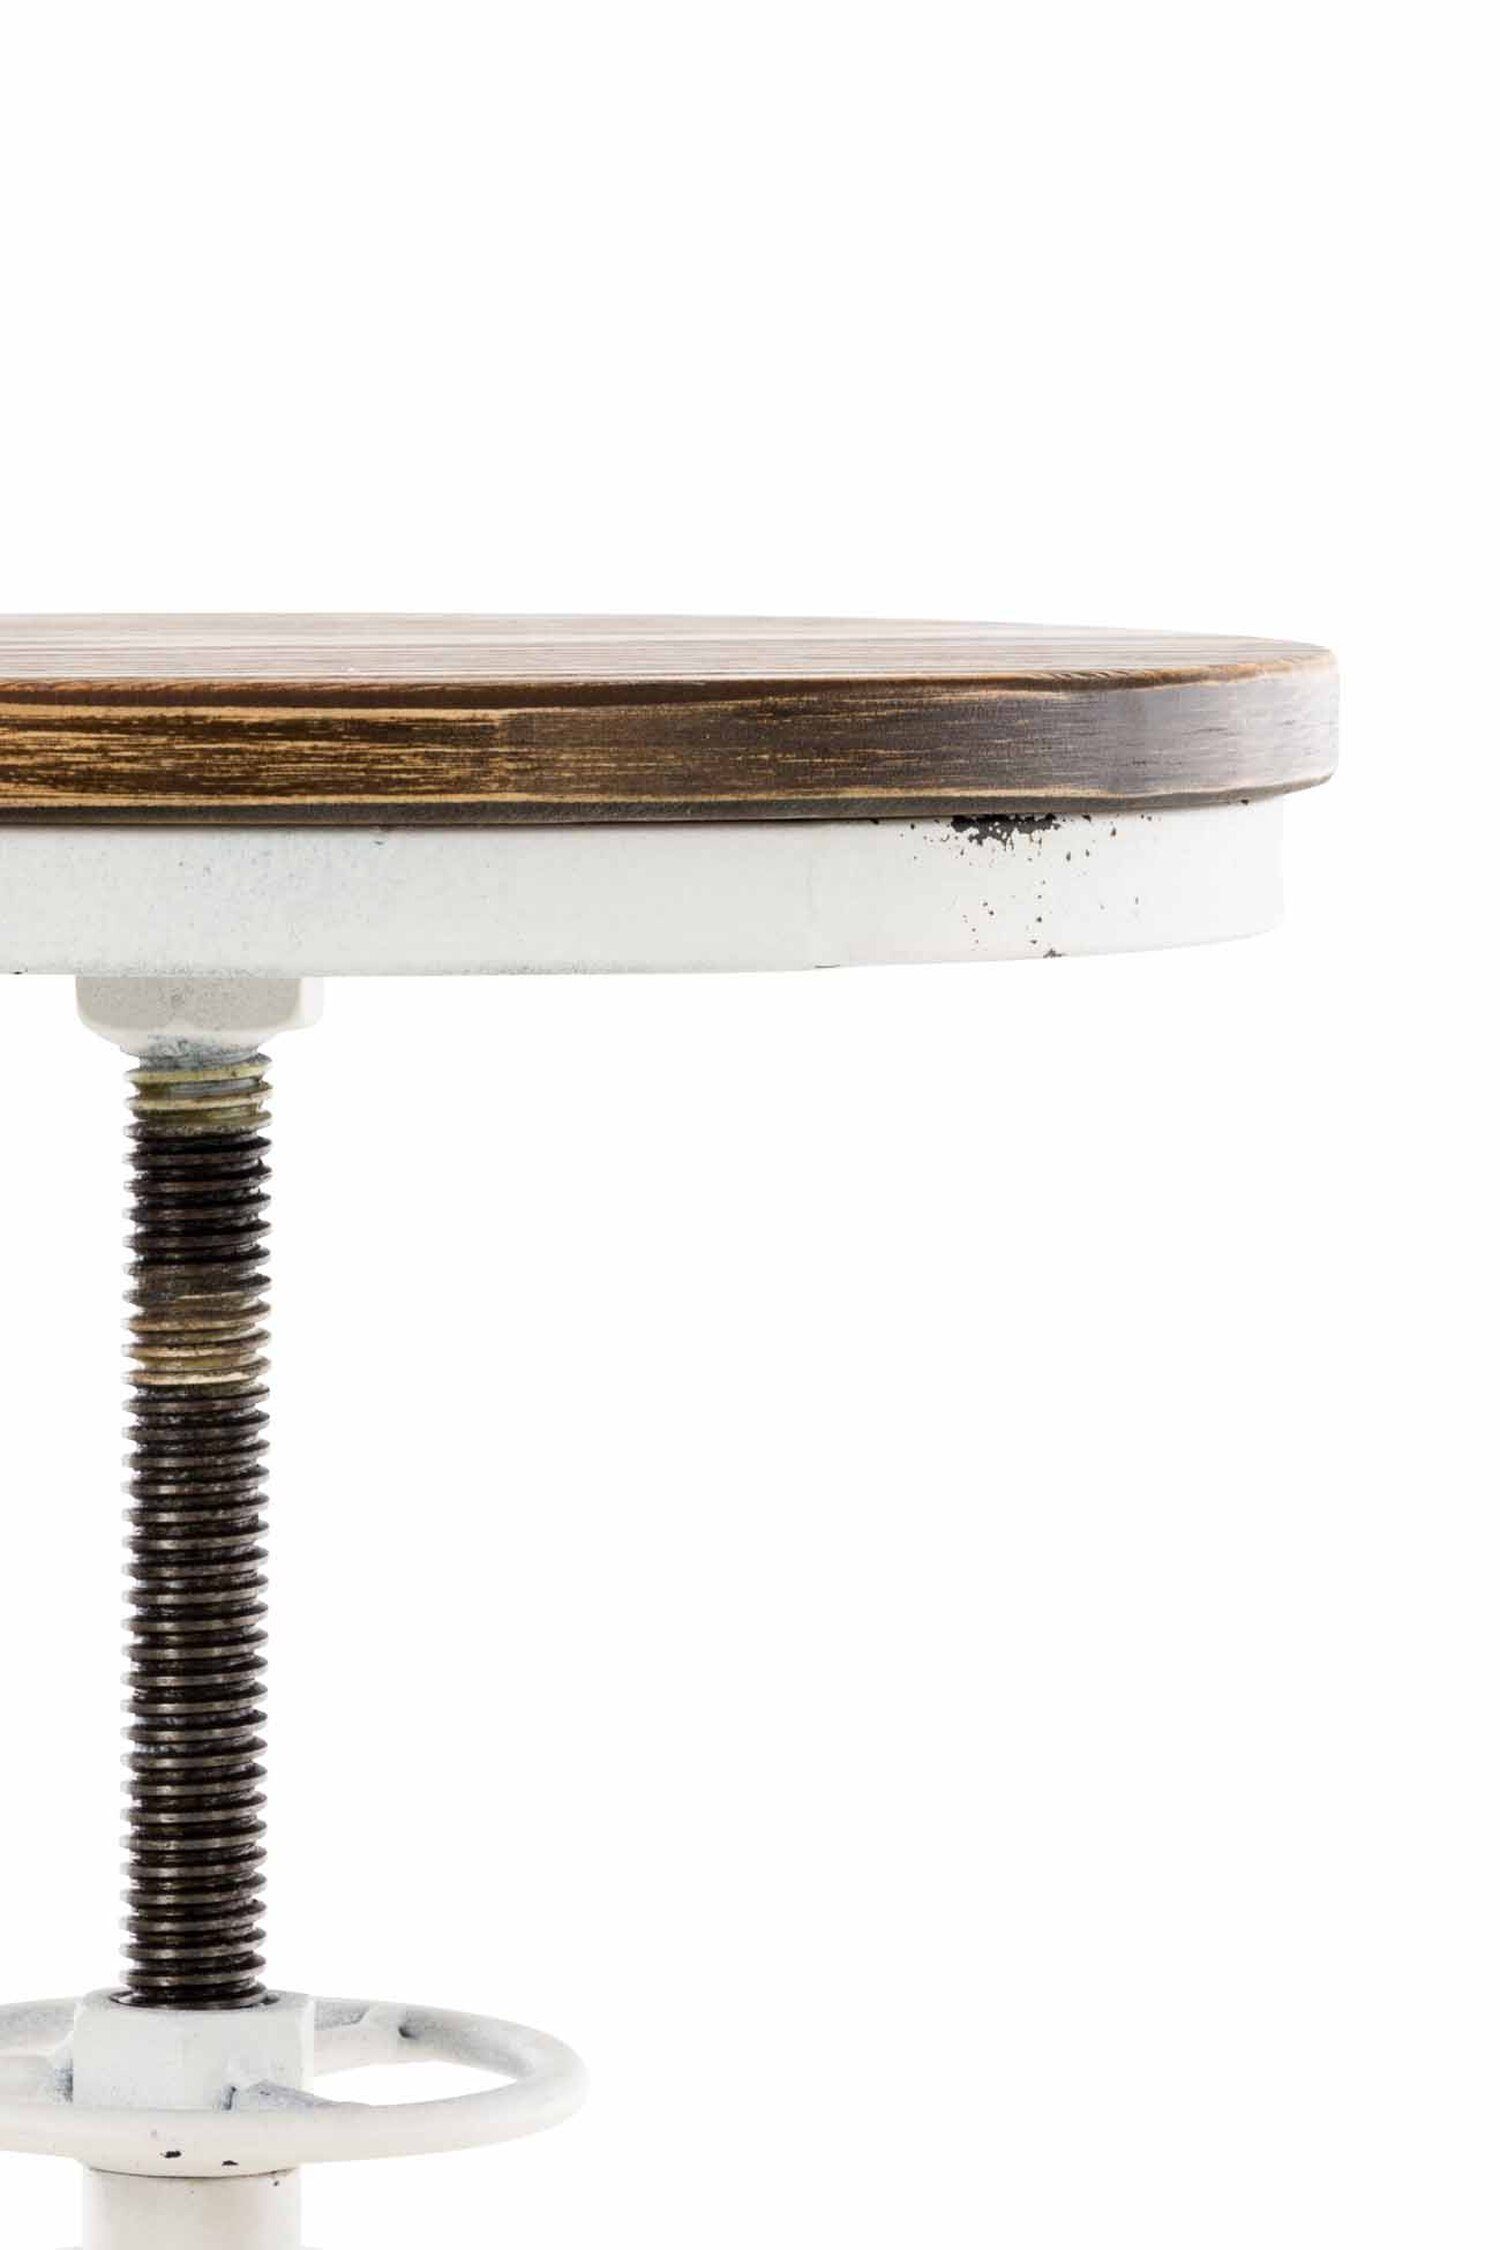 Hocker für Sitzfläche: Weiß - 4-Fuß Metall angenehmer Gestell Fußstütze Küche), TPFLiving mit Theke Weiß & Antik Barhocker Holz Antik (Barstuhl Bruno